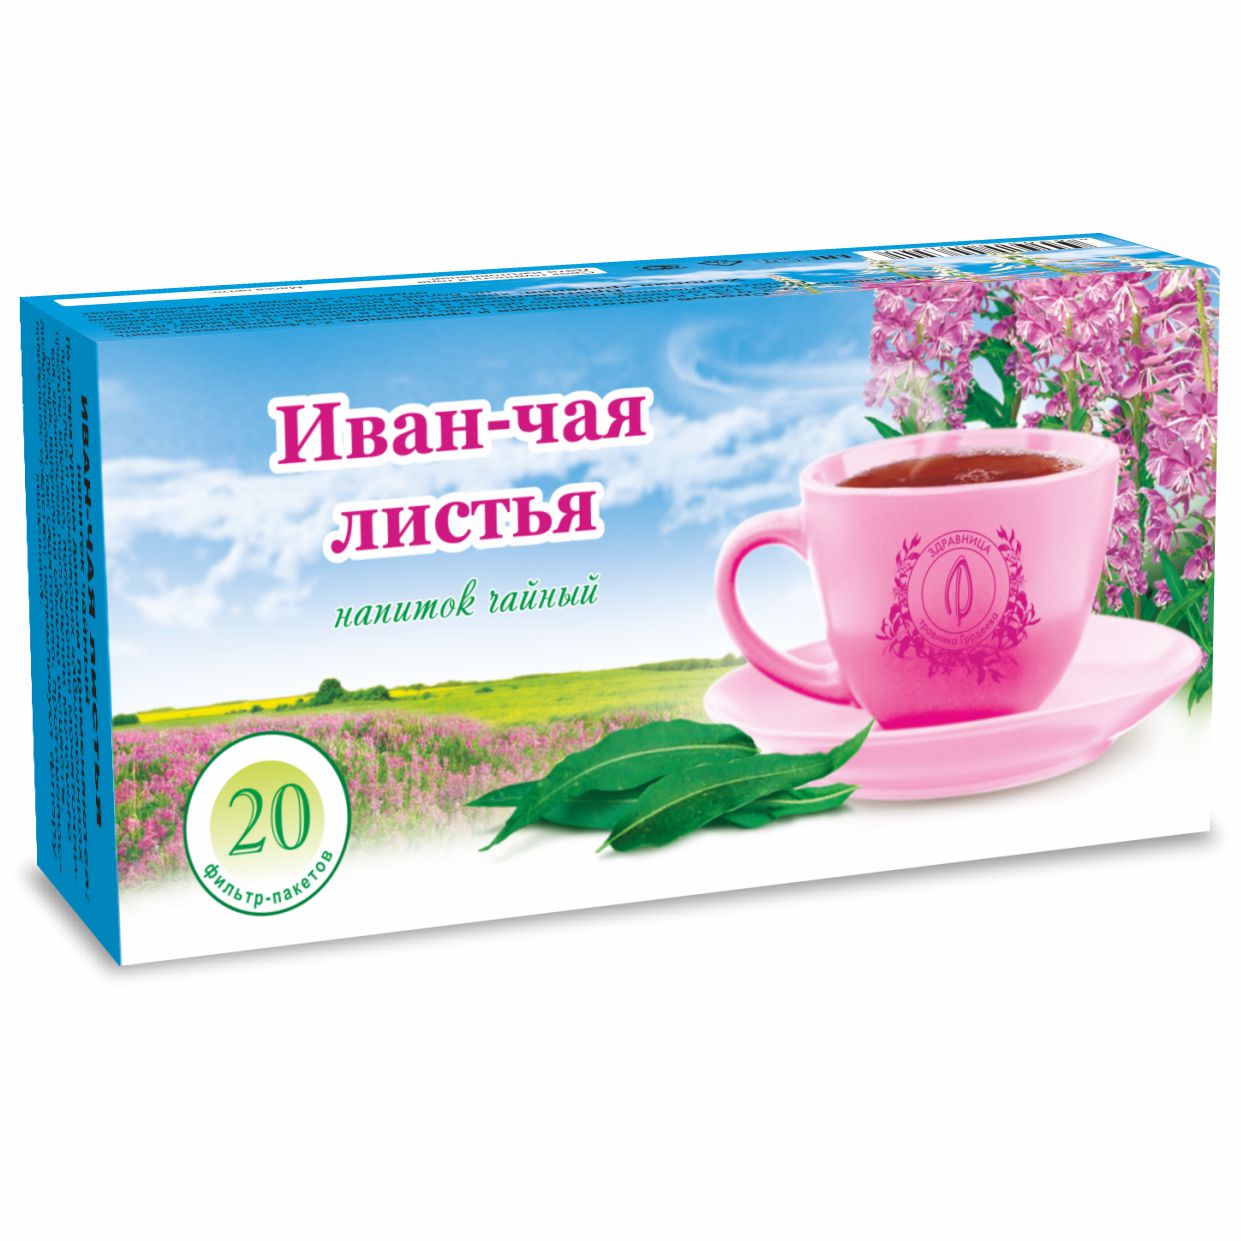 Иван-чая листья, фильтр-пакеты, 20 шт.